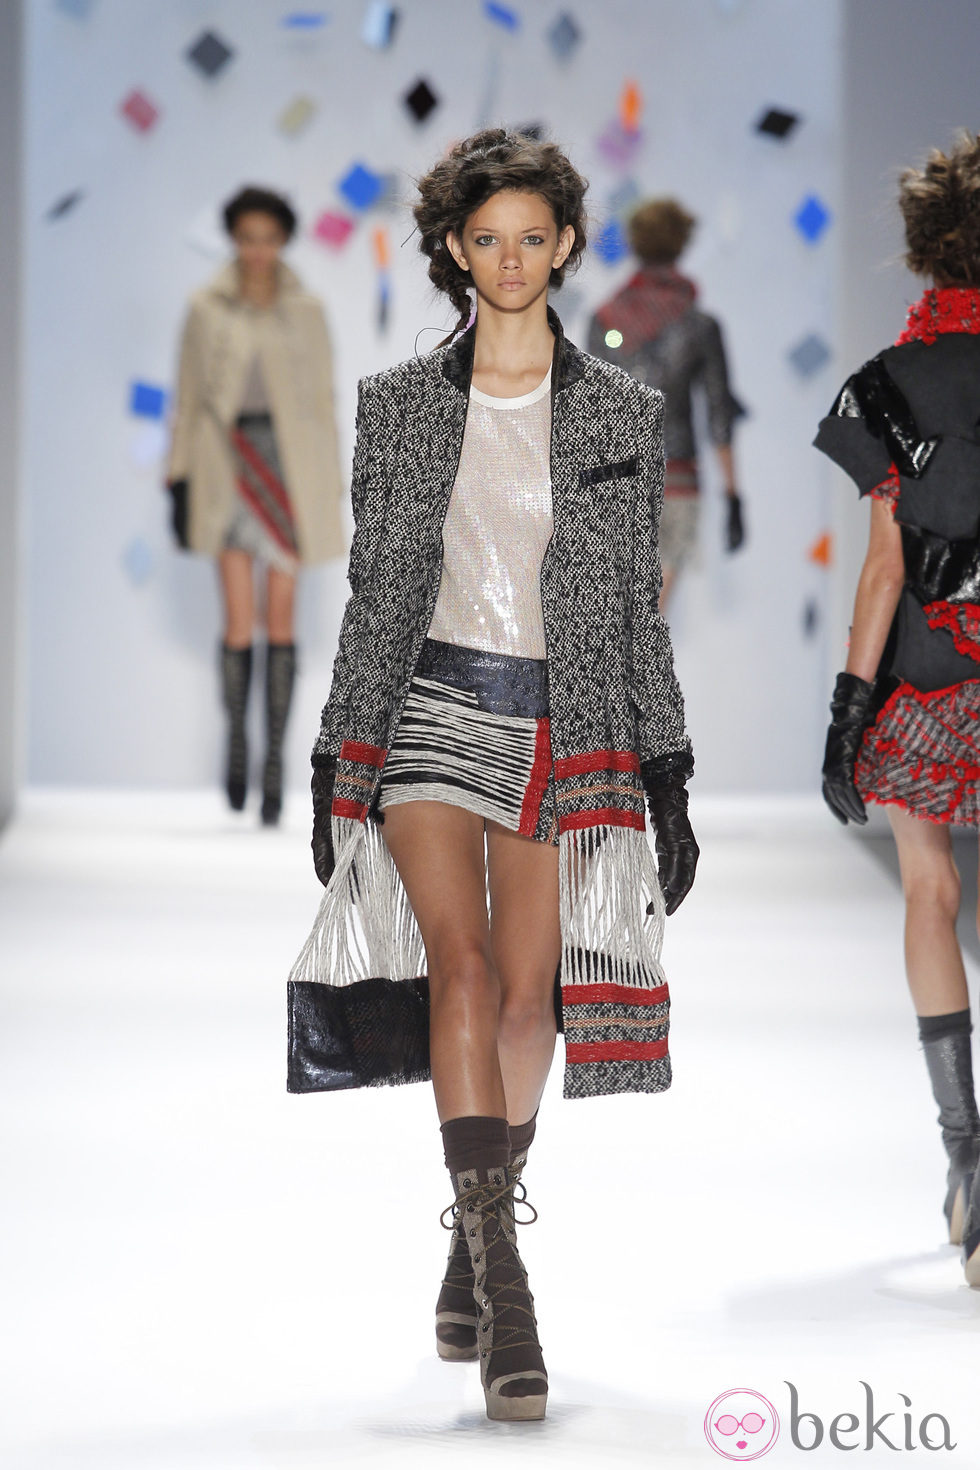 Abrigo de lana gris con minifalda de rayas de Custo Barcelona en la Semana de la Moda de Nueva York